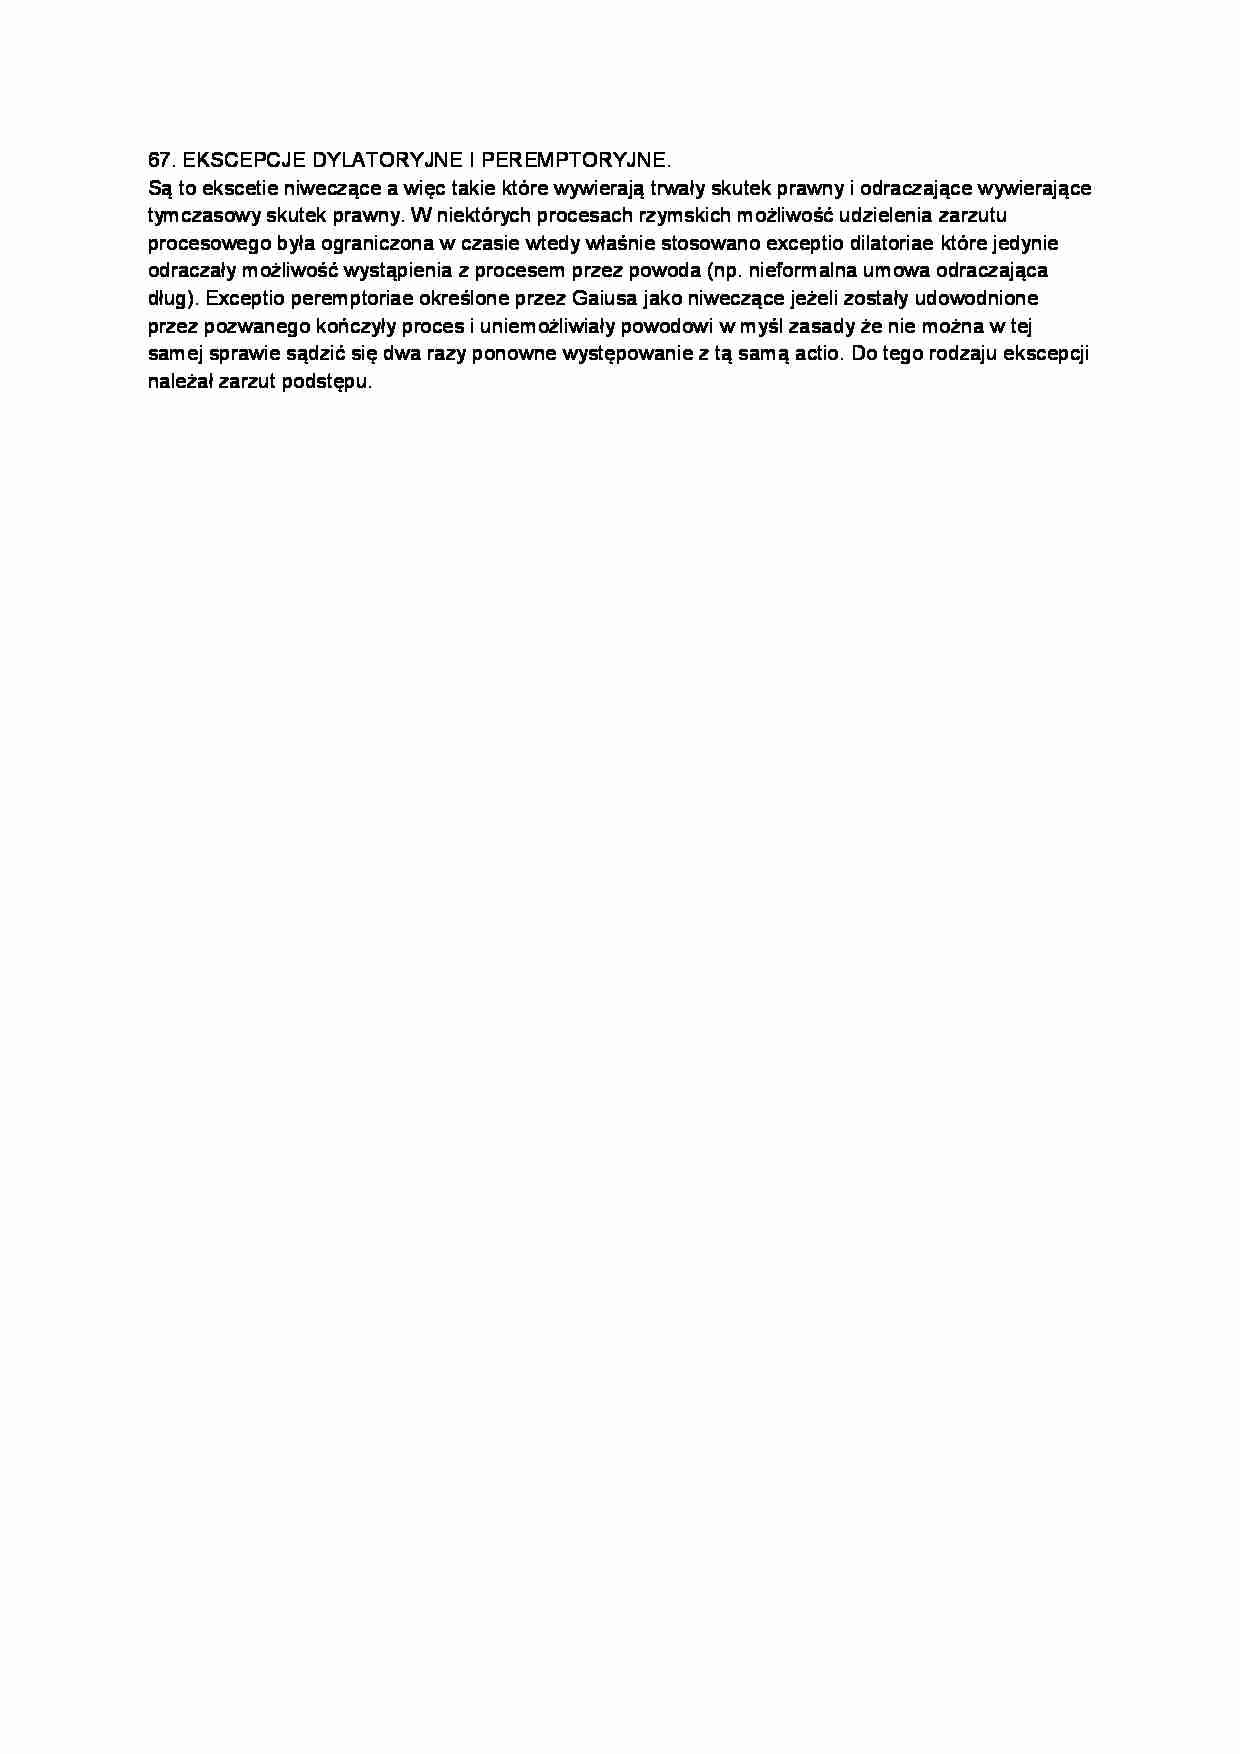 Ekscepcje dylatoryjne i peremptoryjne-opracowanie - strona 1